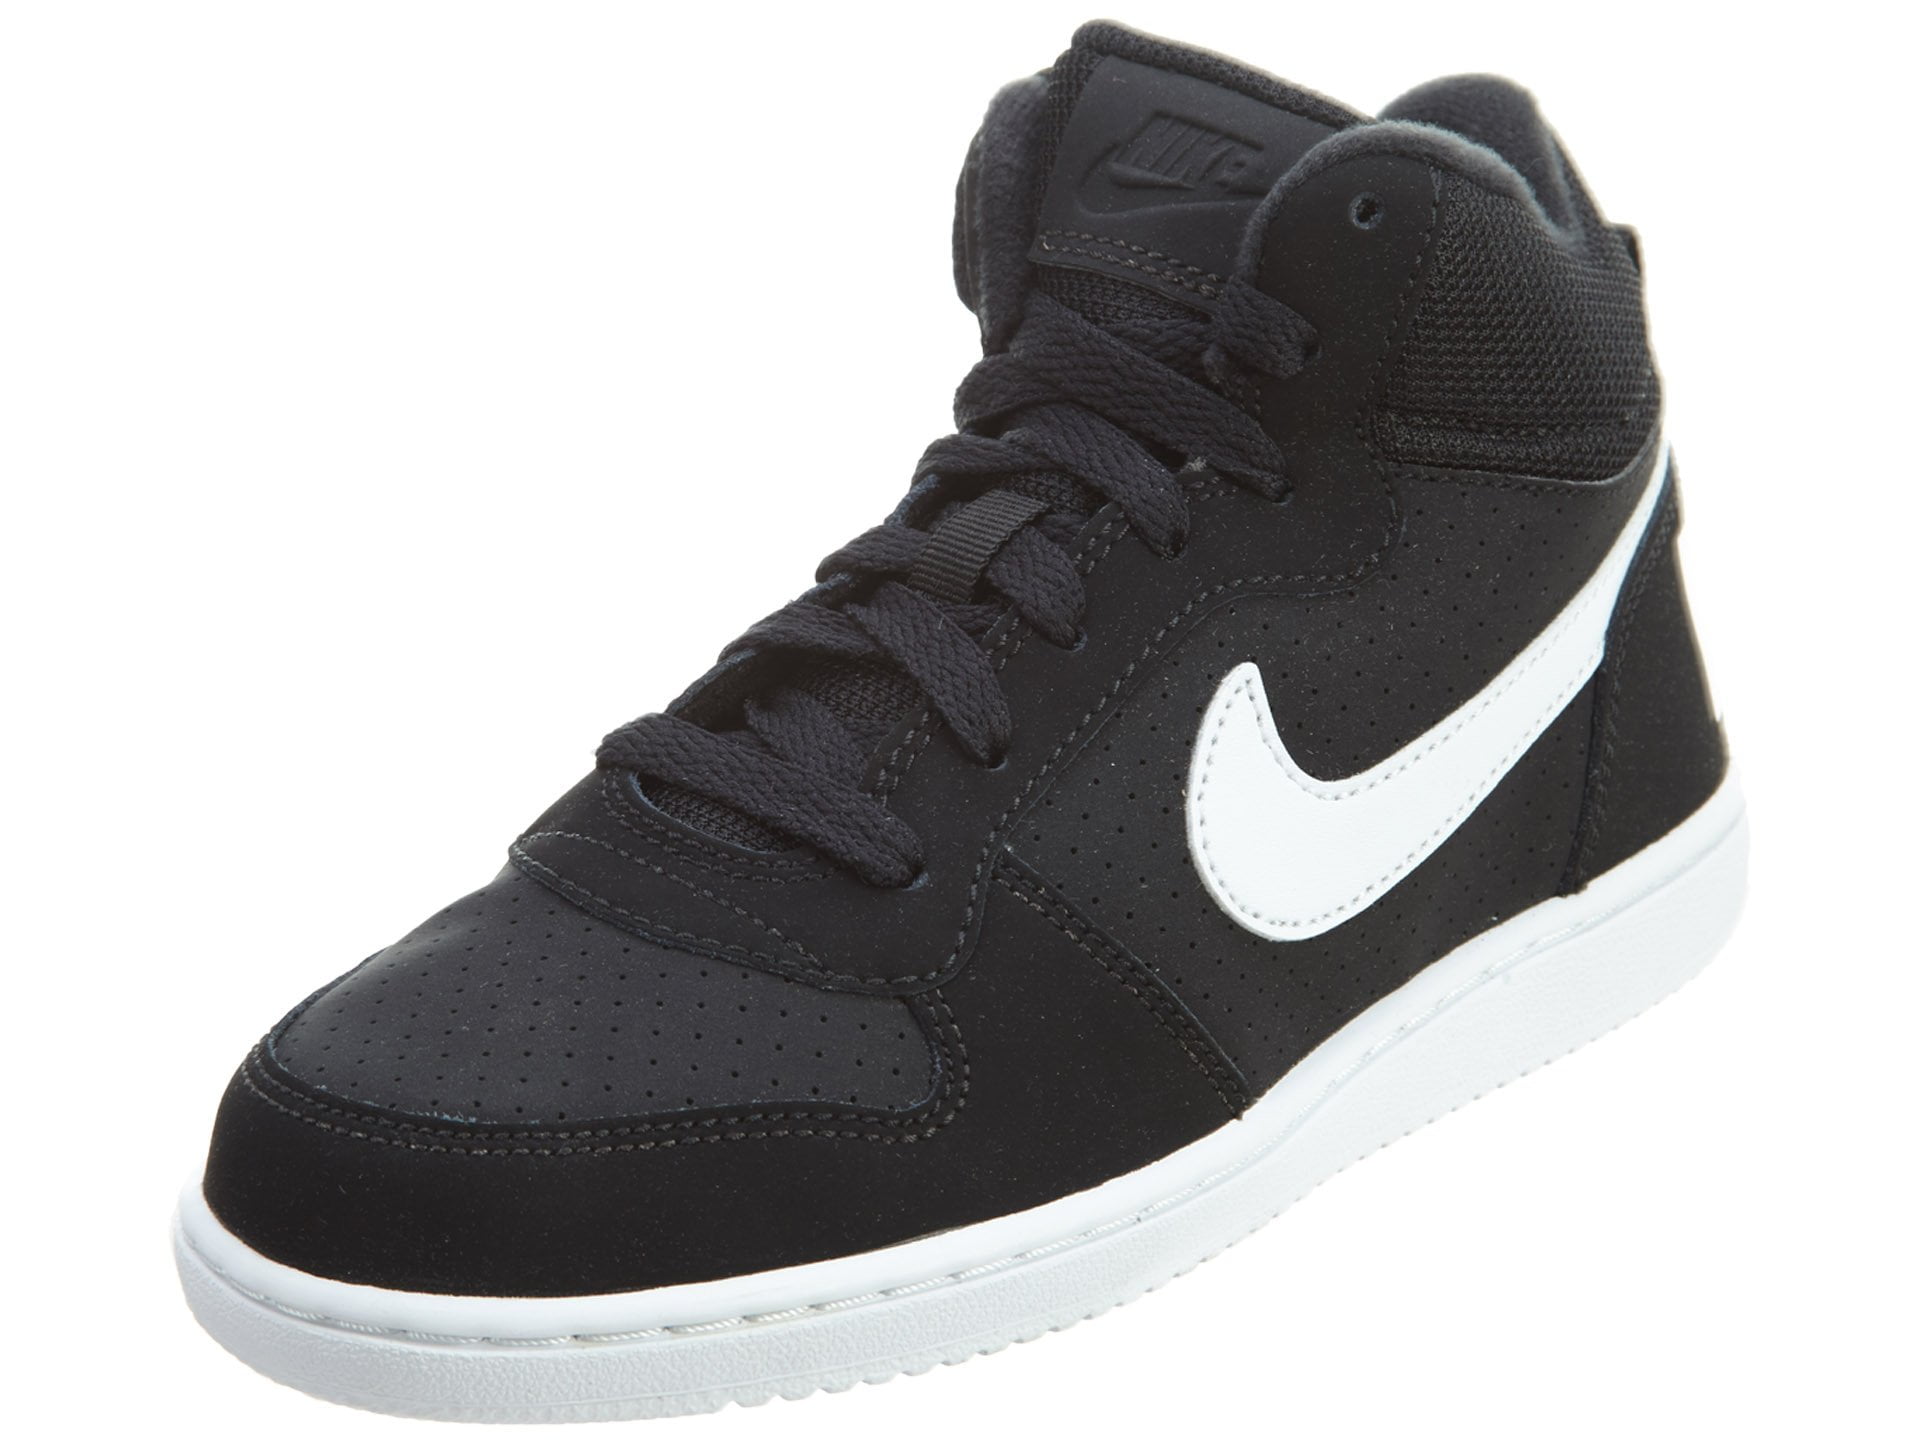 Nike - Nike 839978-004 : Court Borough Mid Little Kids Shoes Black ...